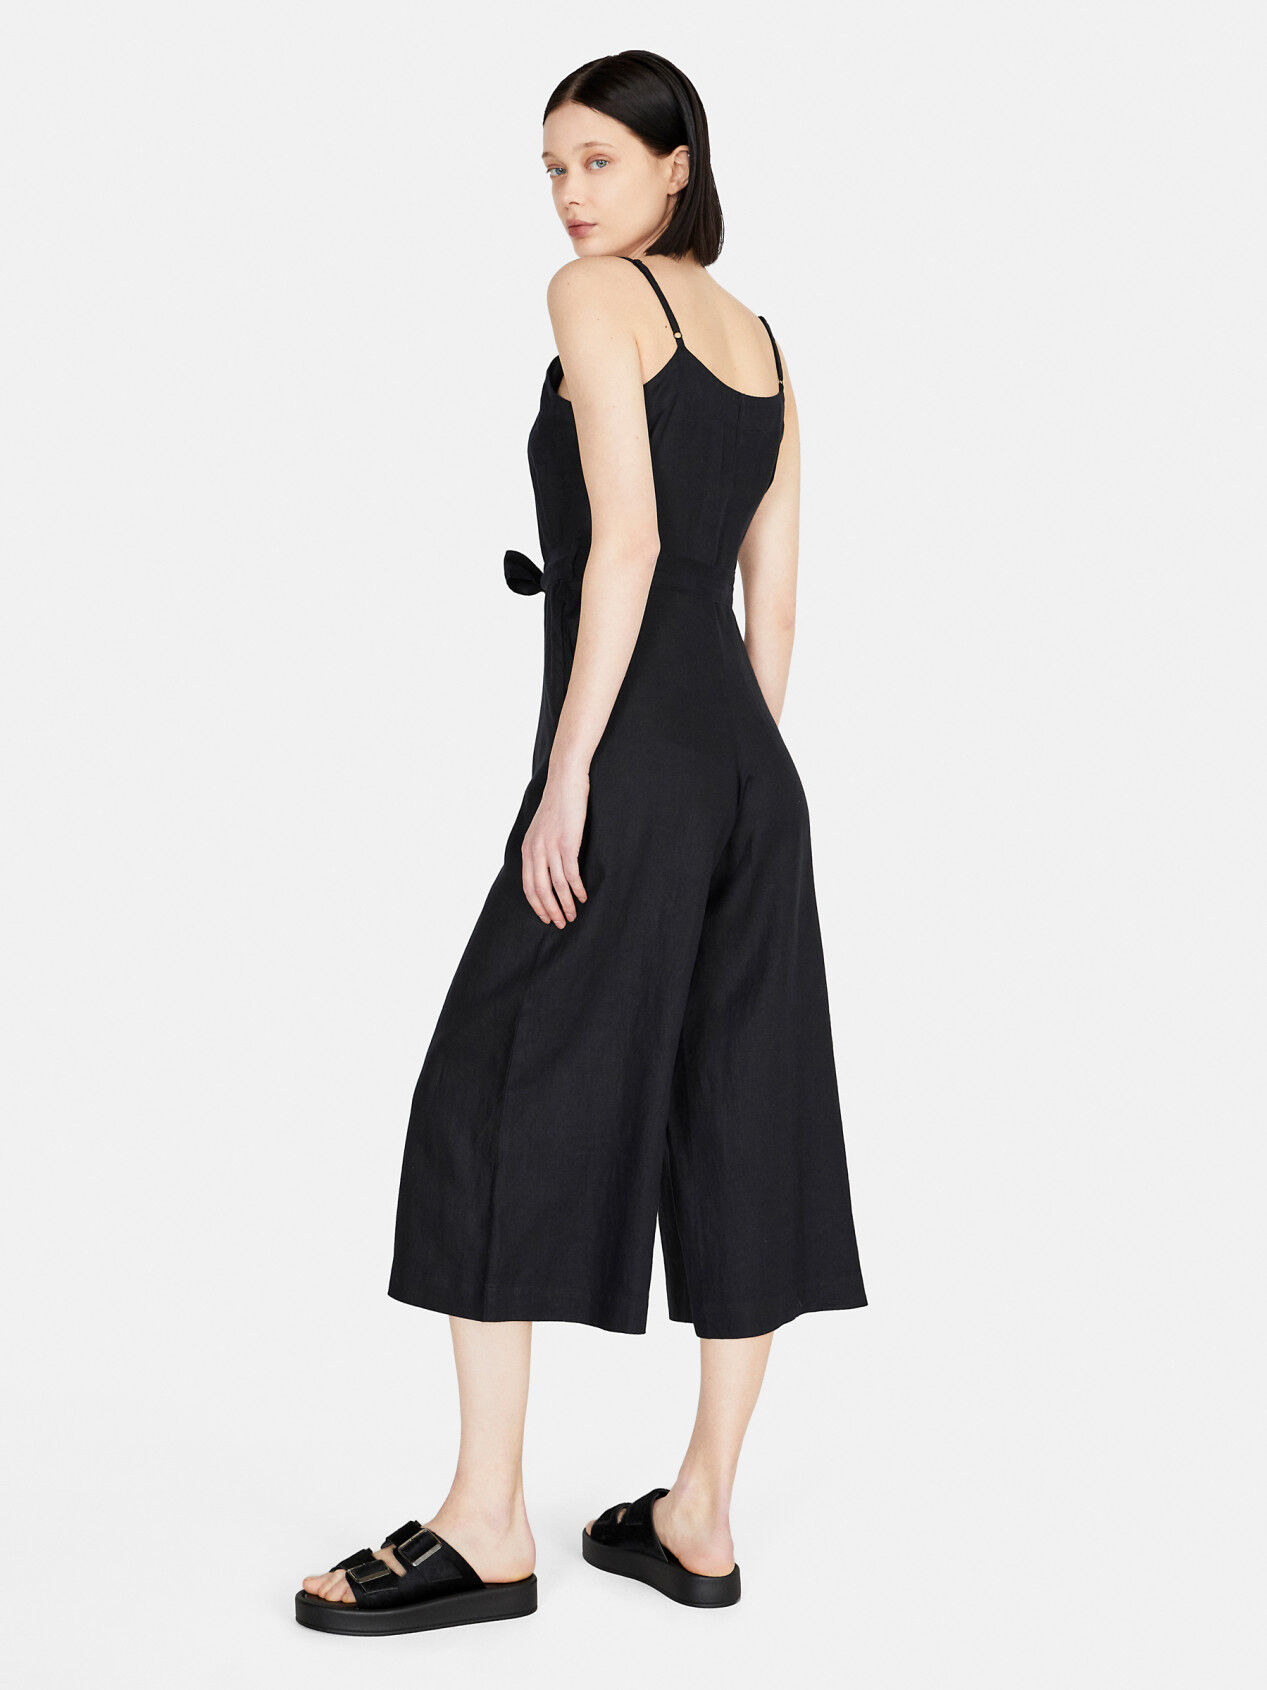 Zara Tropical Print Culotte Jumpsuit/Romper